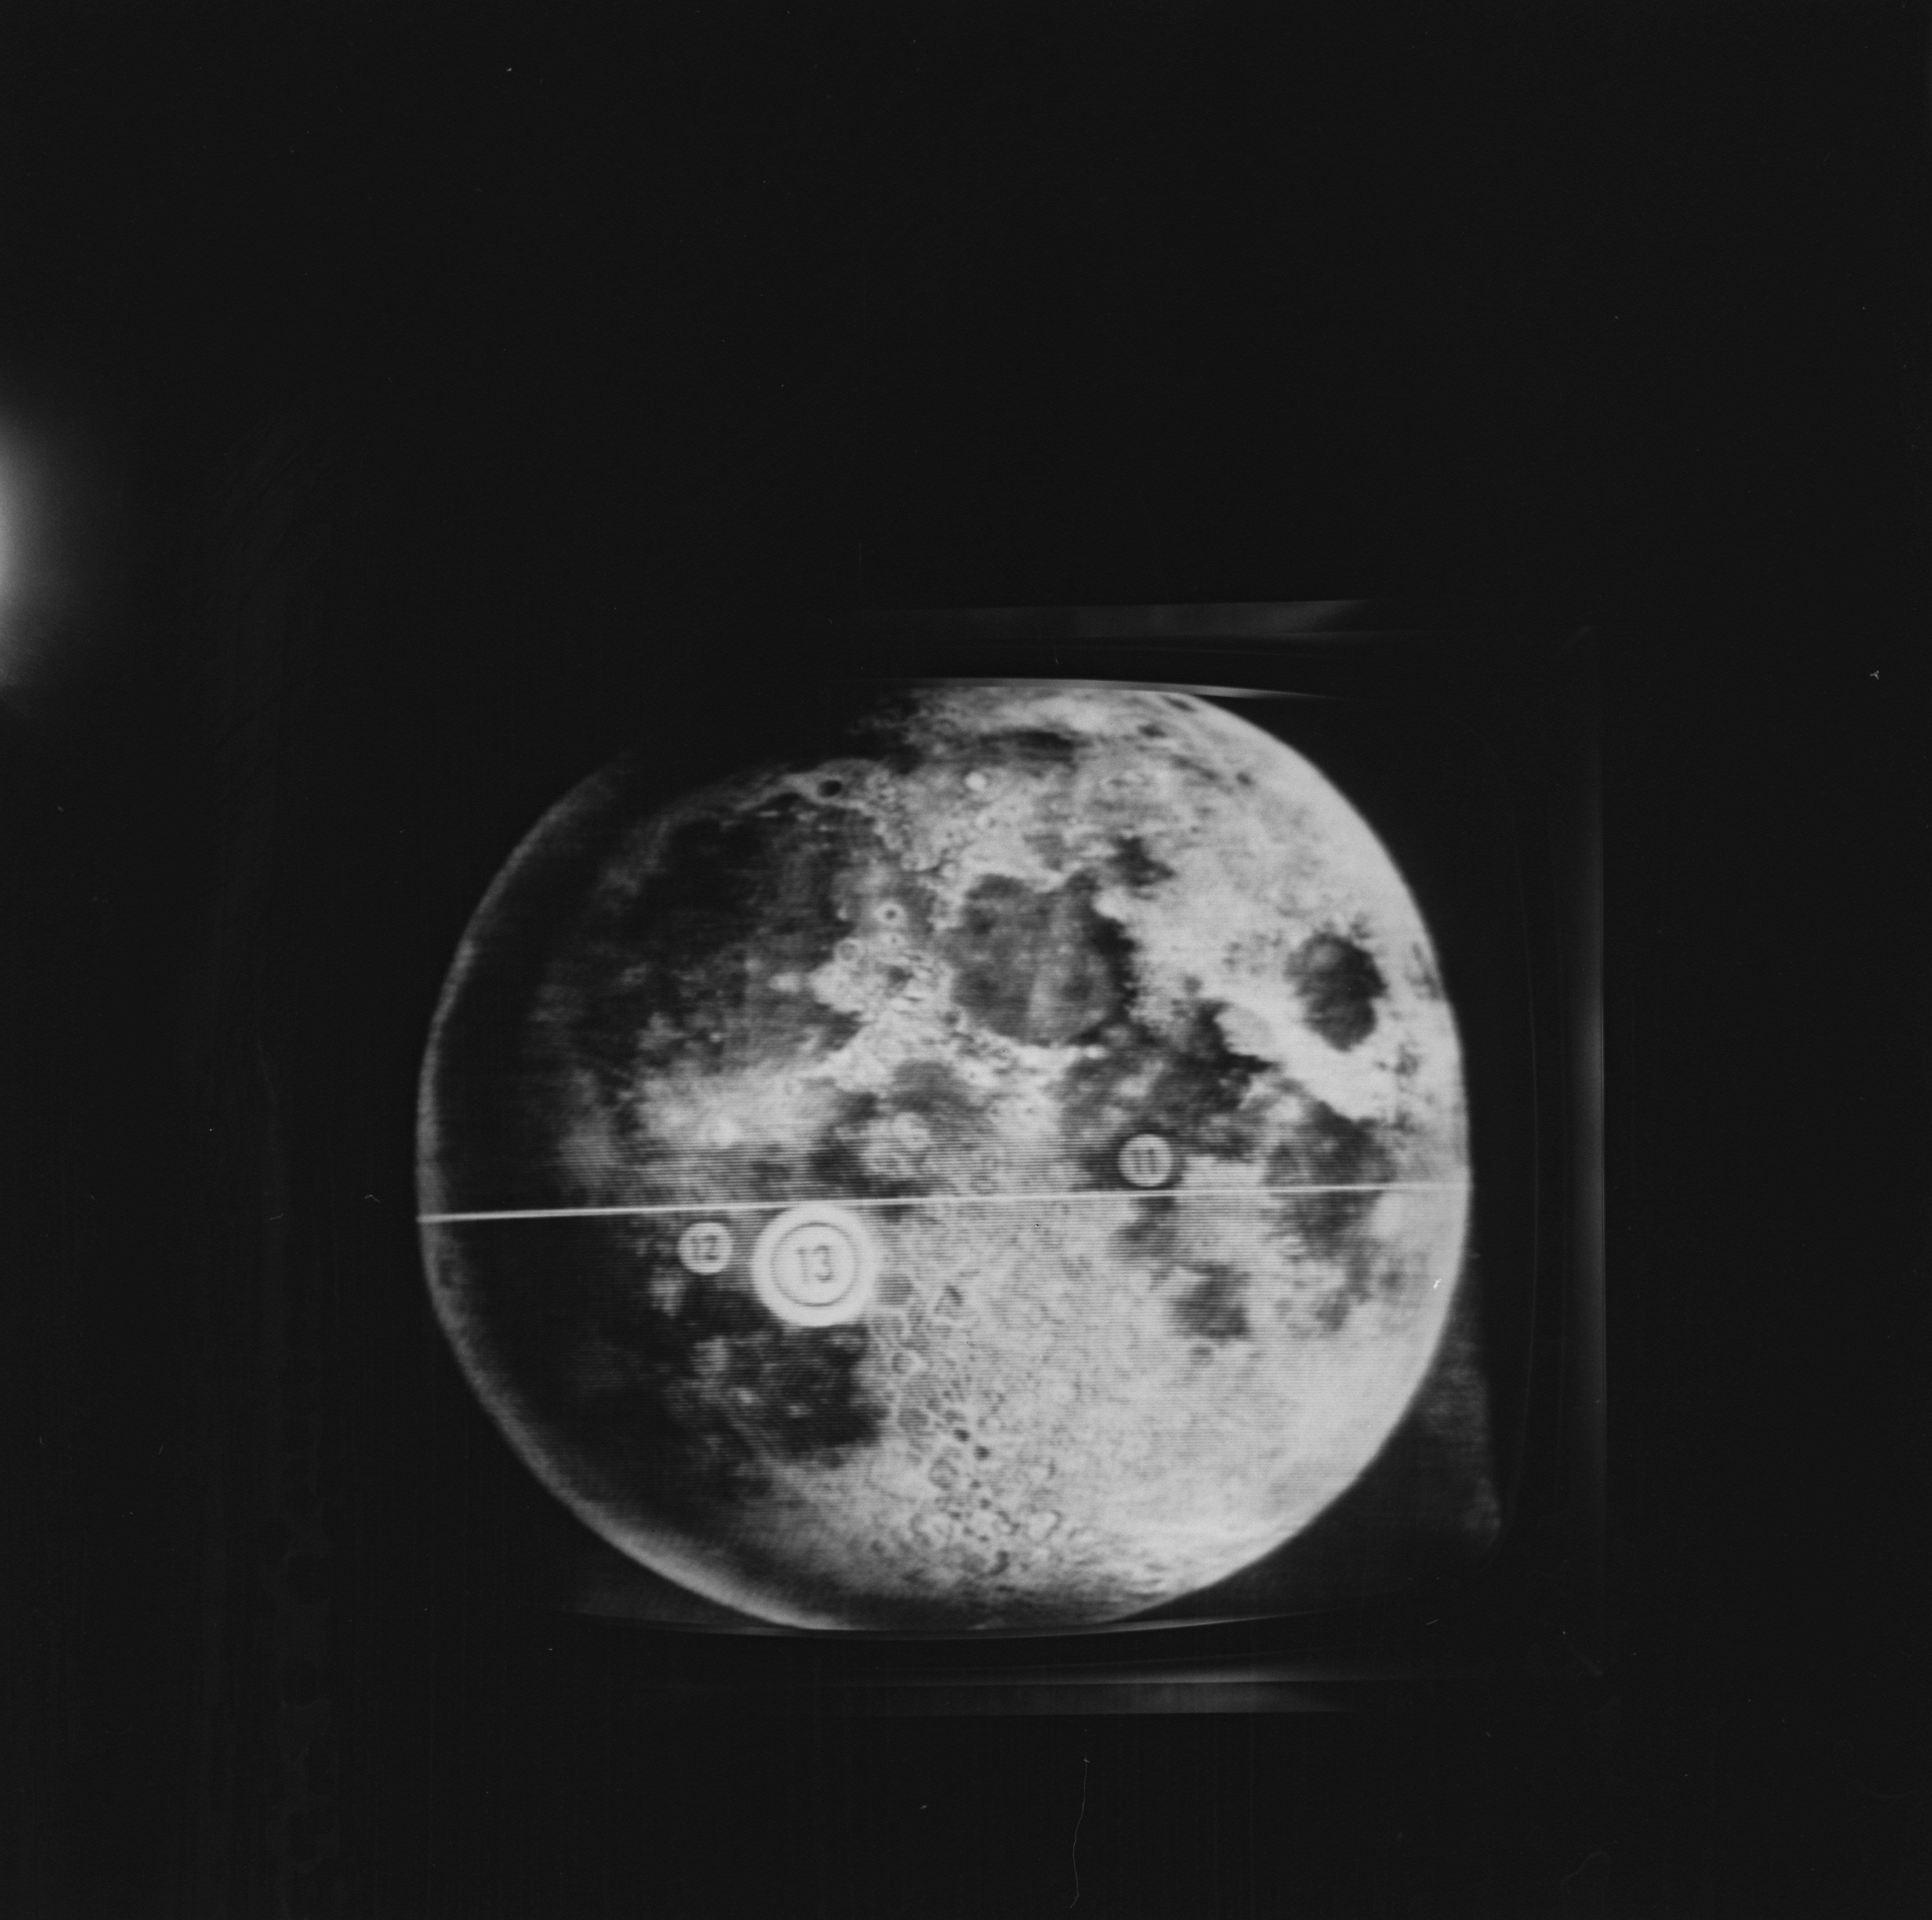 De missie van Apollo 13 op televisie, 1970_copyright ErfgoedBrugge.be - collectie Brusselle-Traen